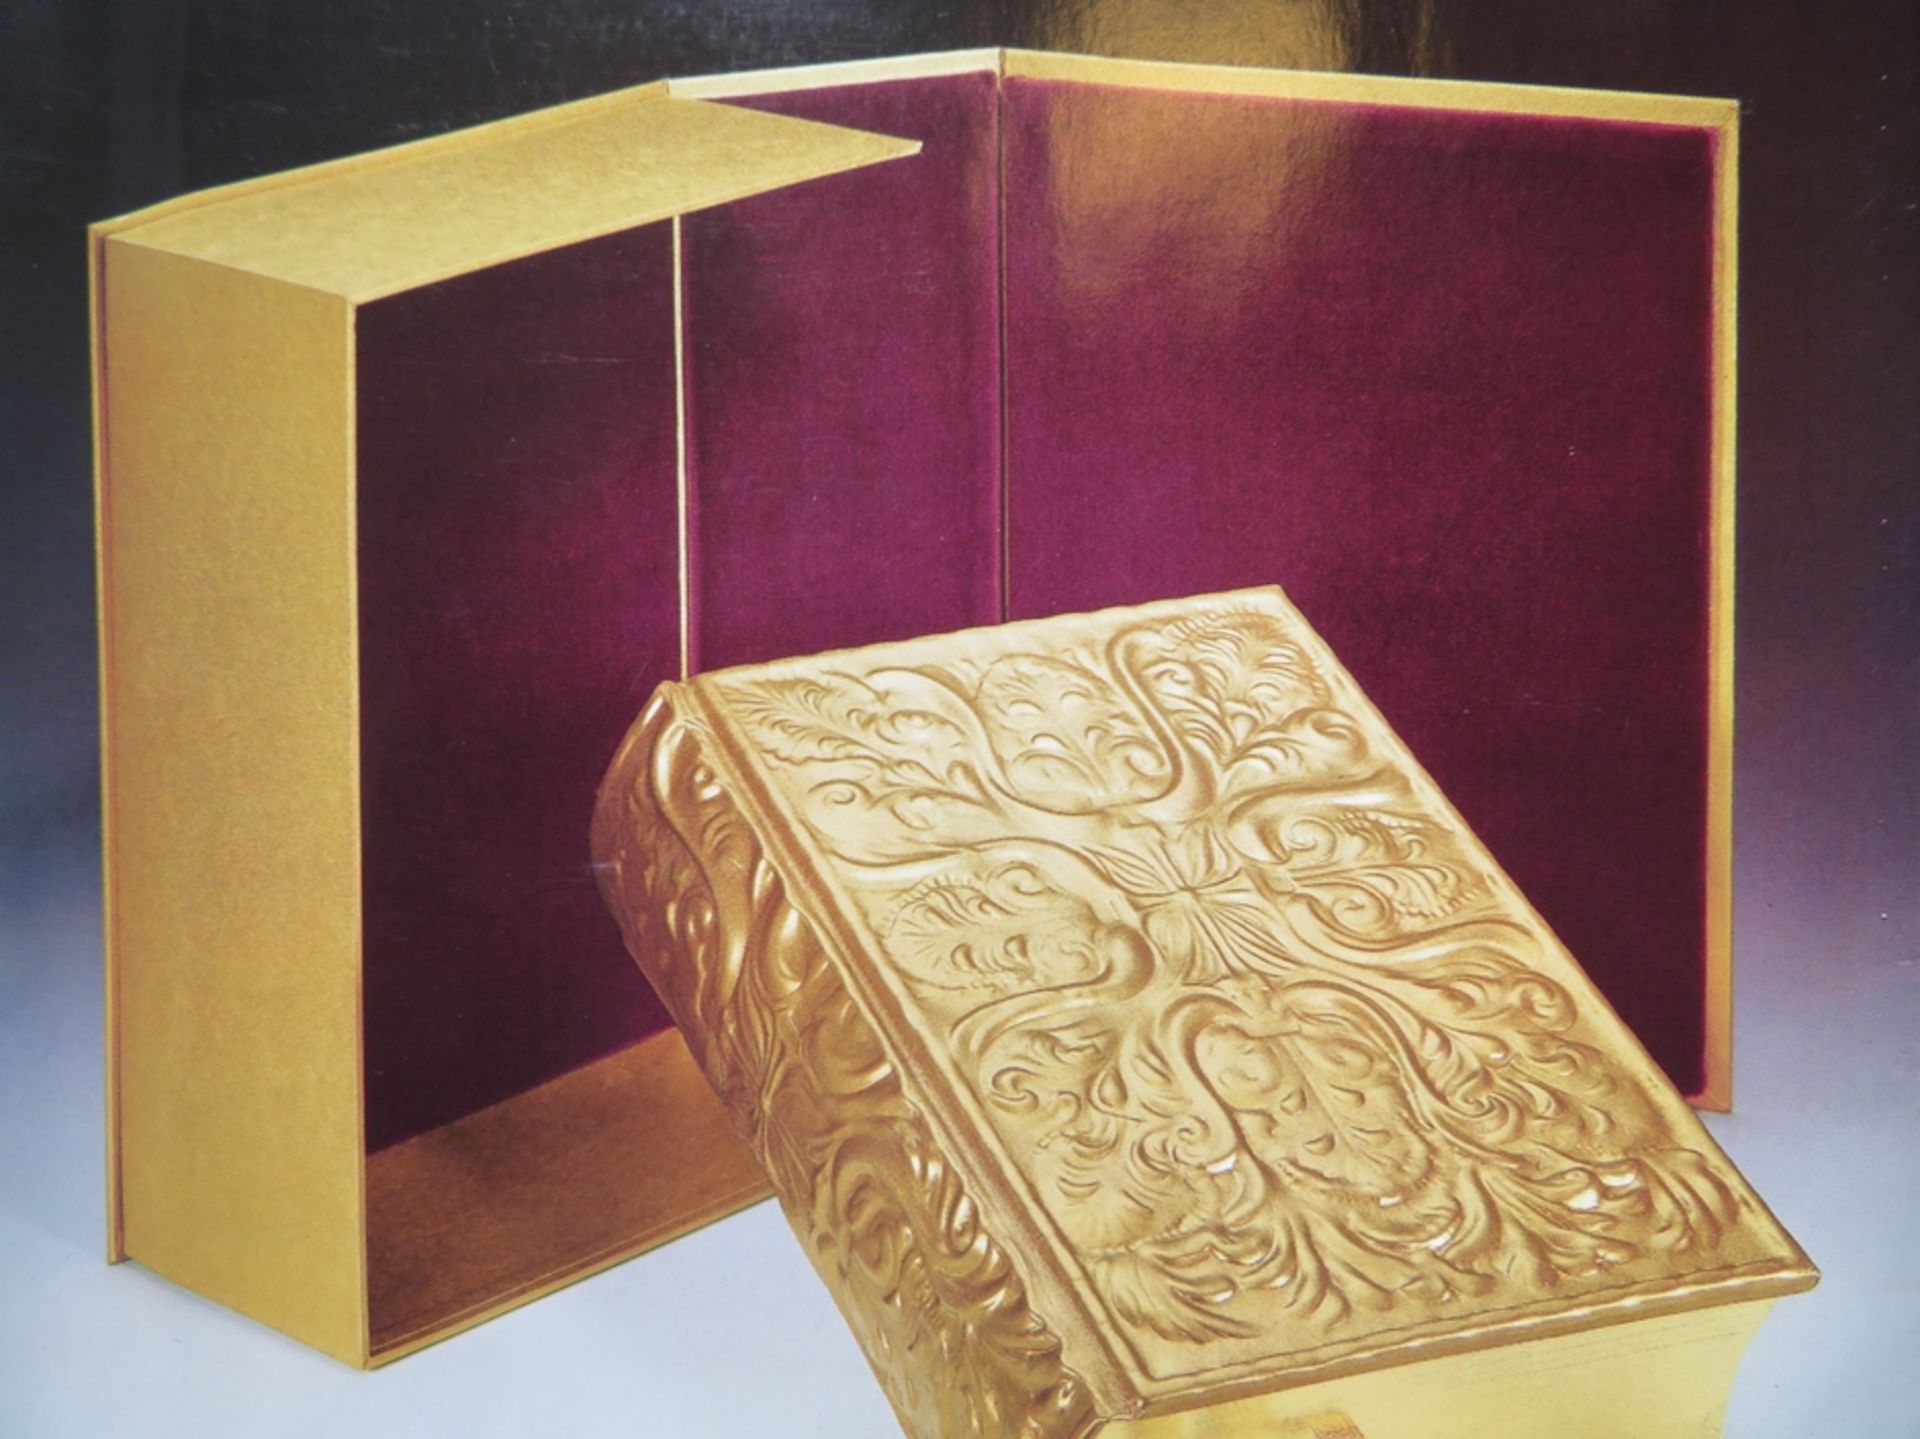 Ernst-Fuchs-Bibel; Die Bibel, gestaltete und bebildert von Ernst Fuchs, in der Übersetzung von Hamp